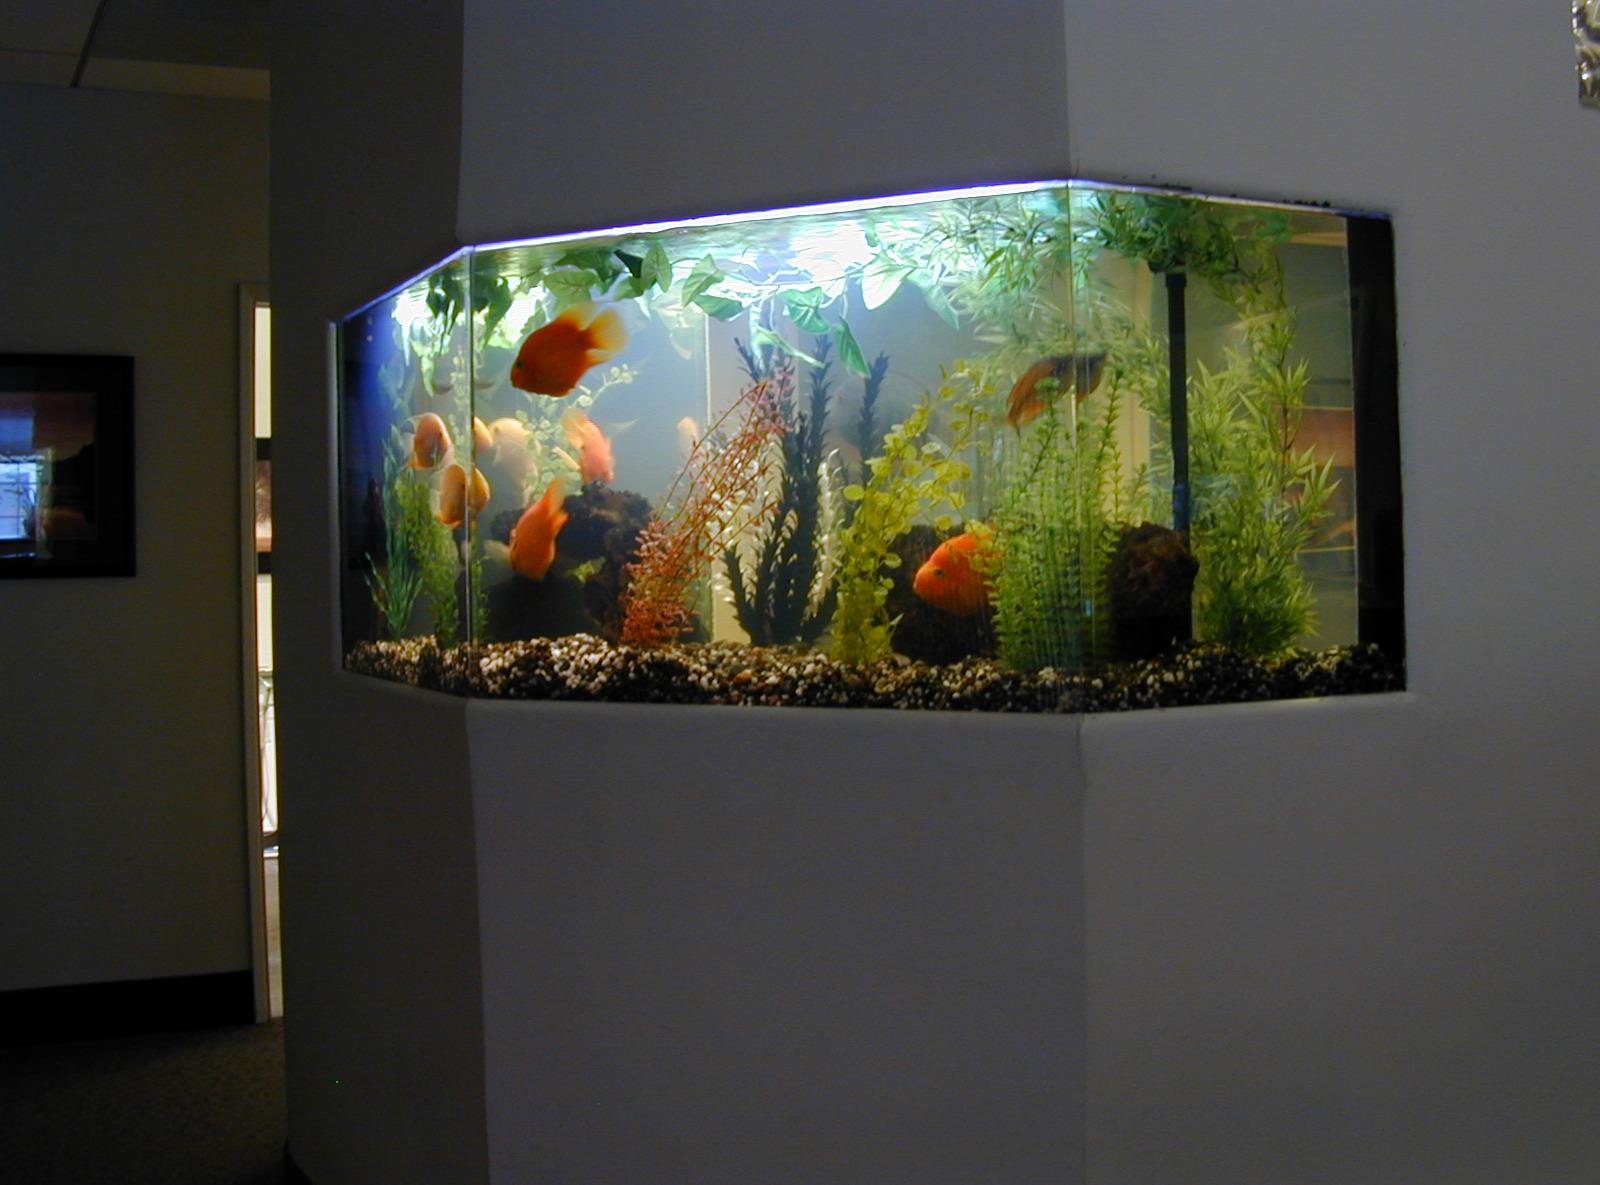 Decor for the aquarium in the hallway